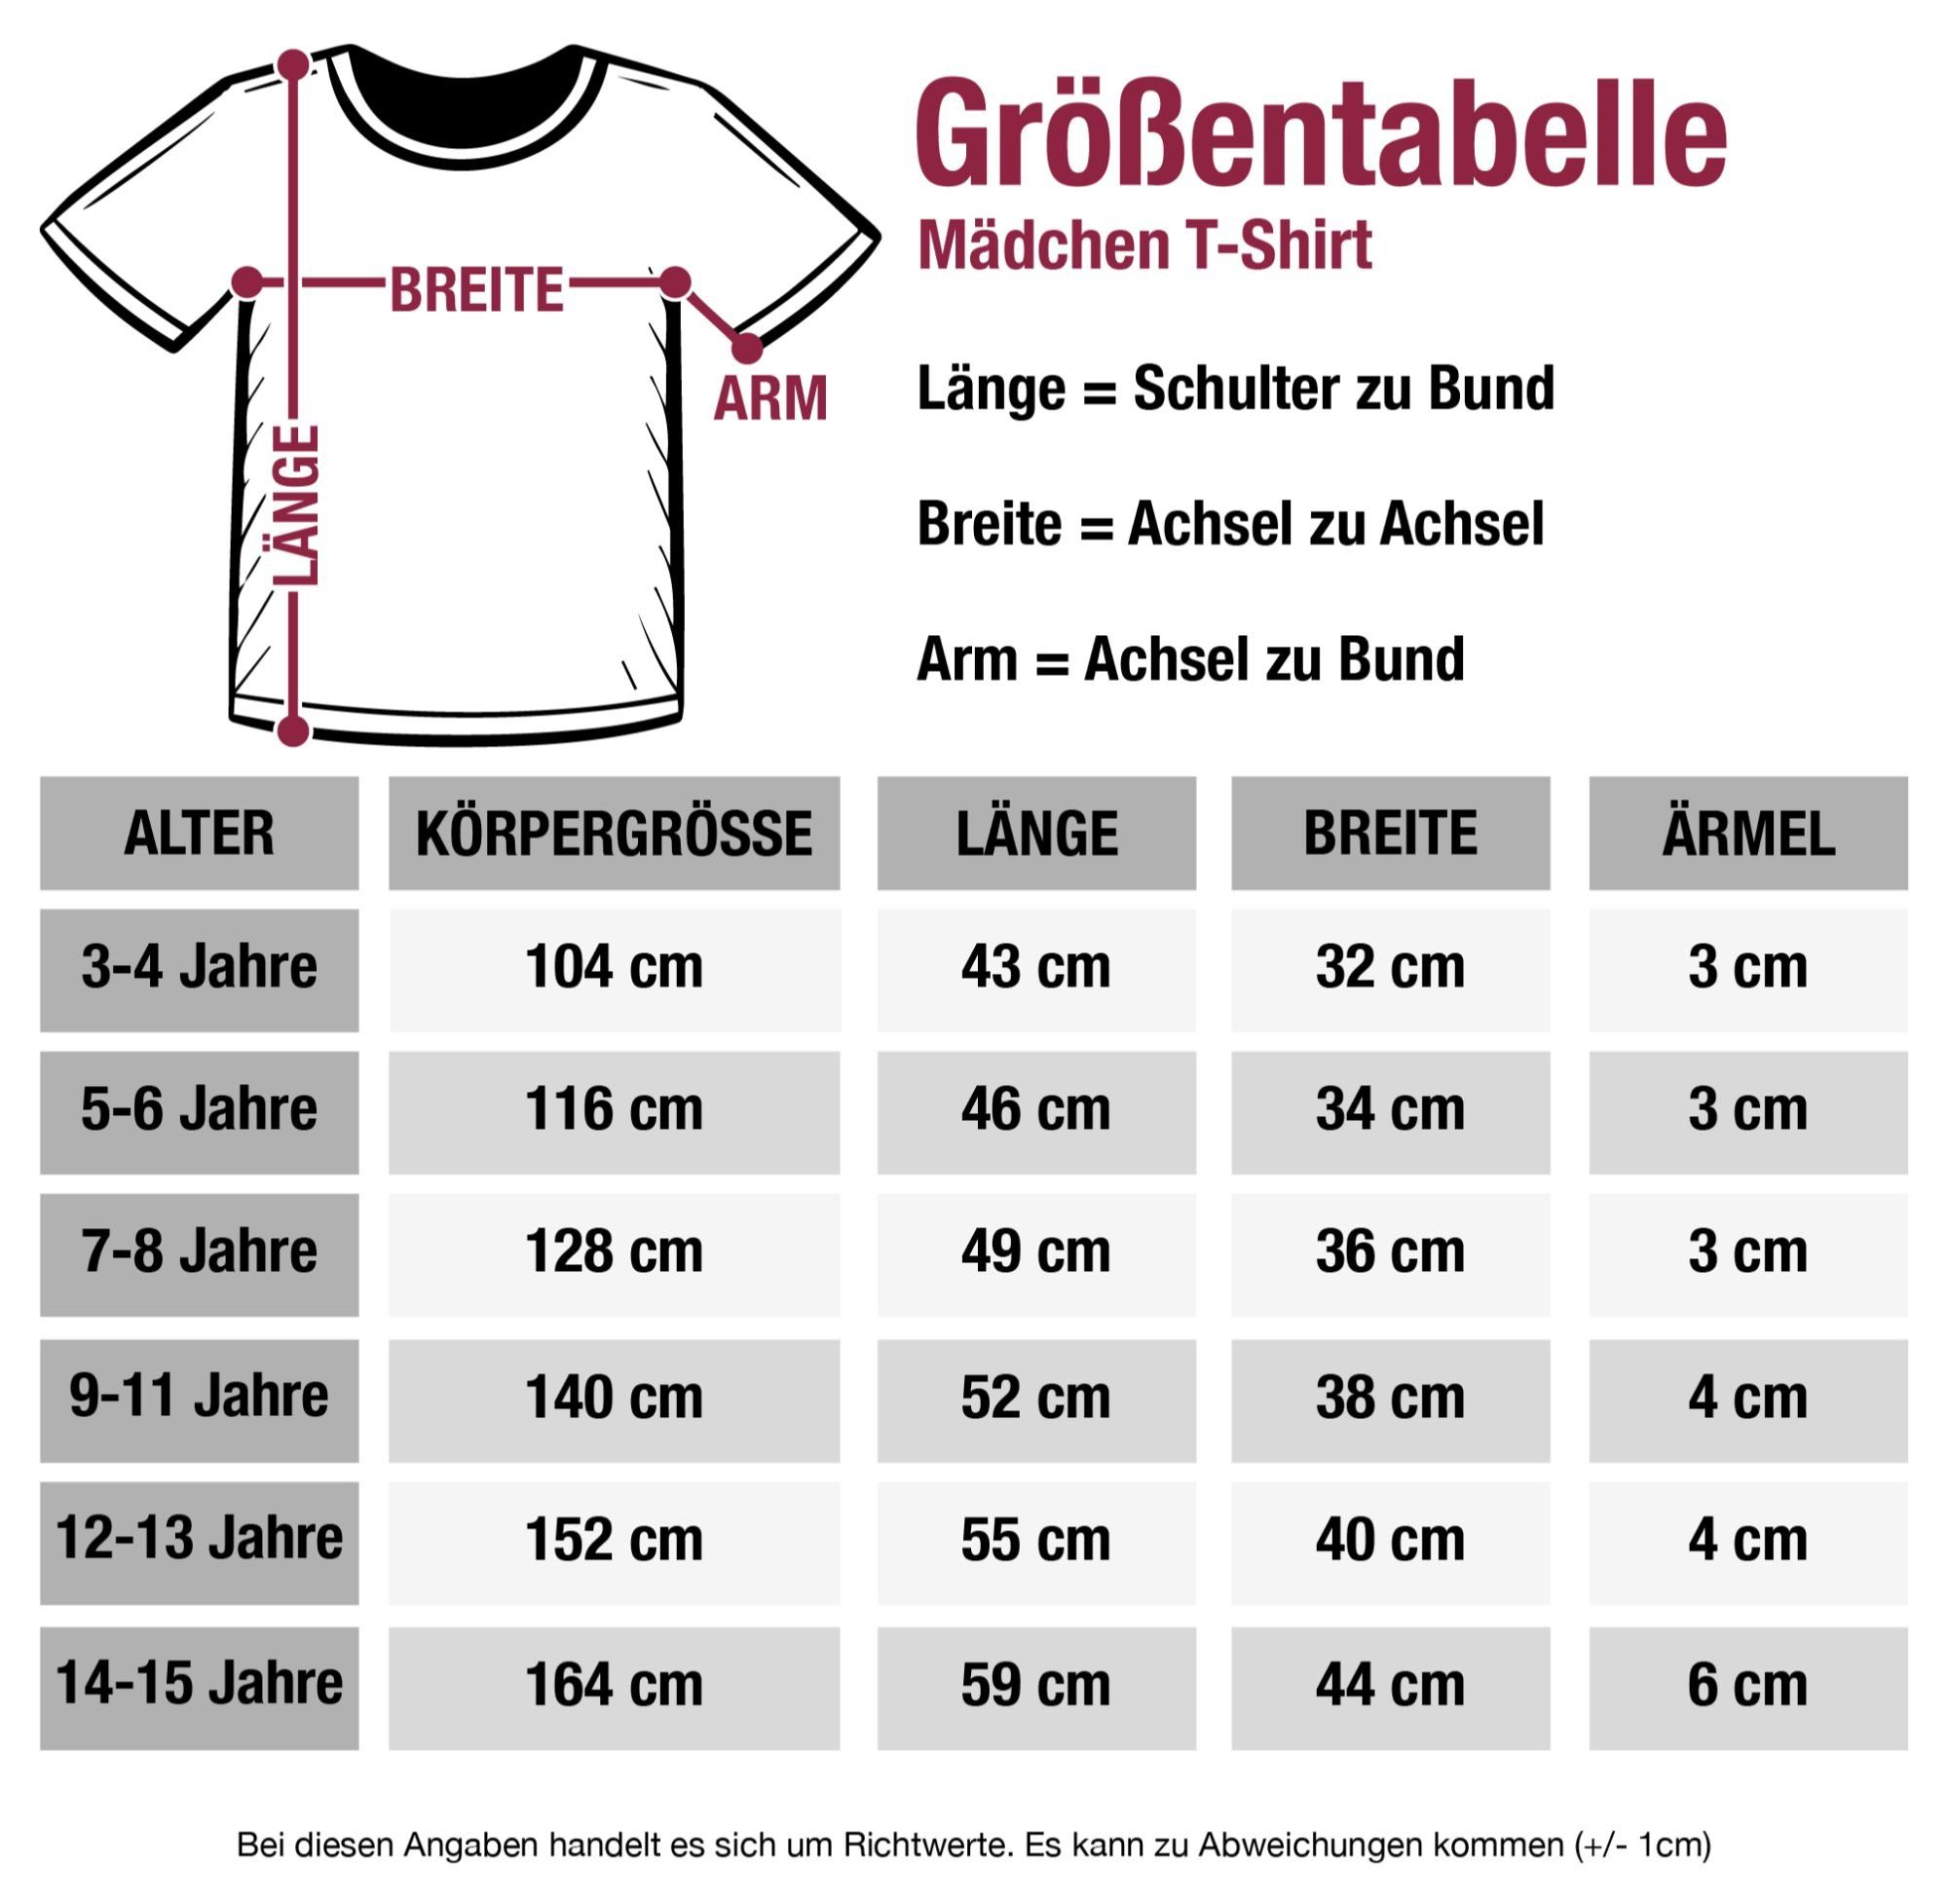 3 Kinder T-Shirt Shirtracer Skyline Wappen Germany Deutschland Weiß Berlin Länder